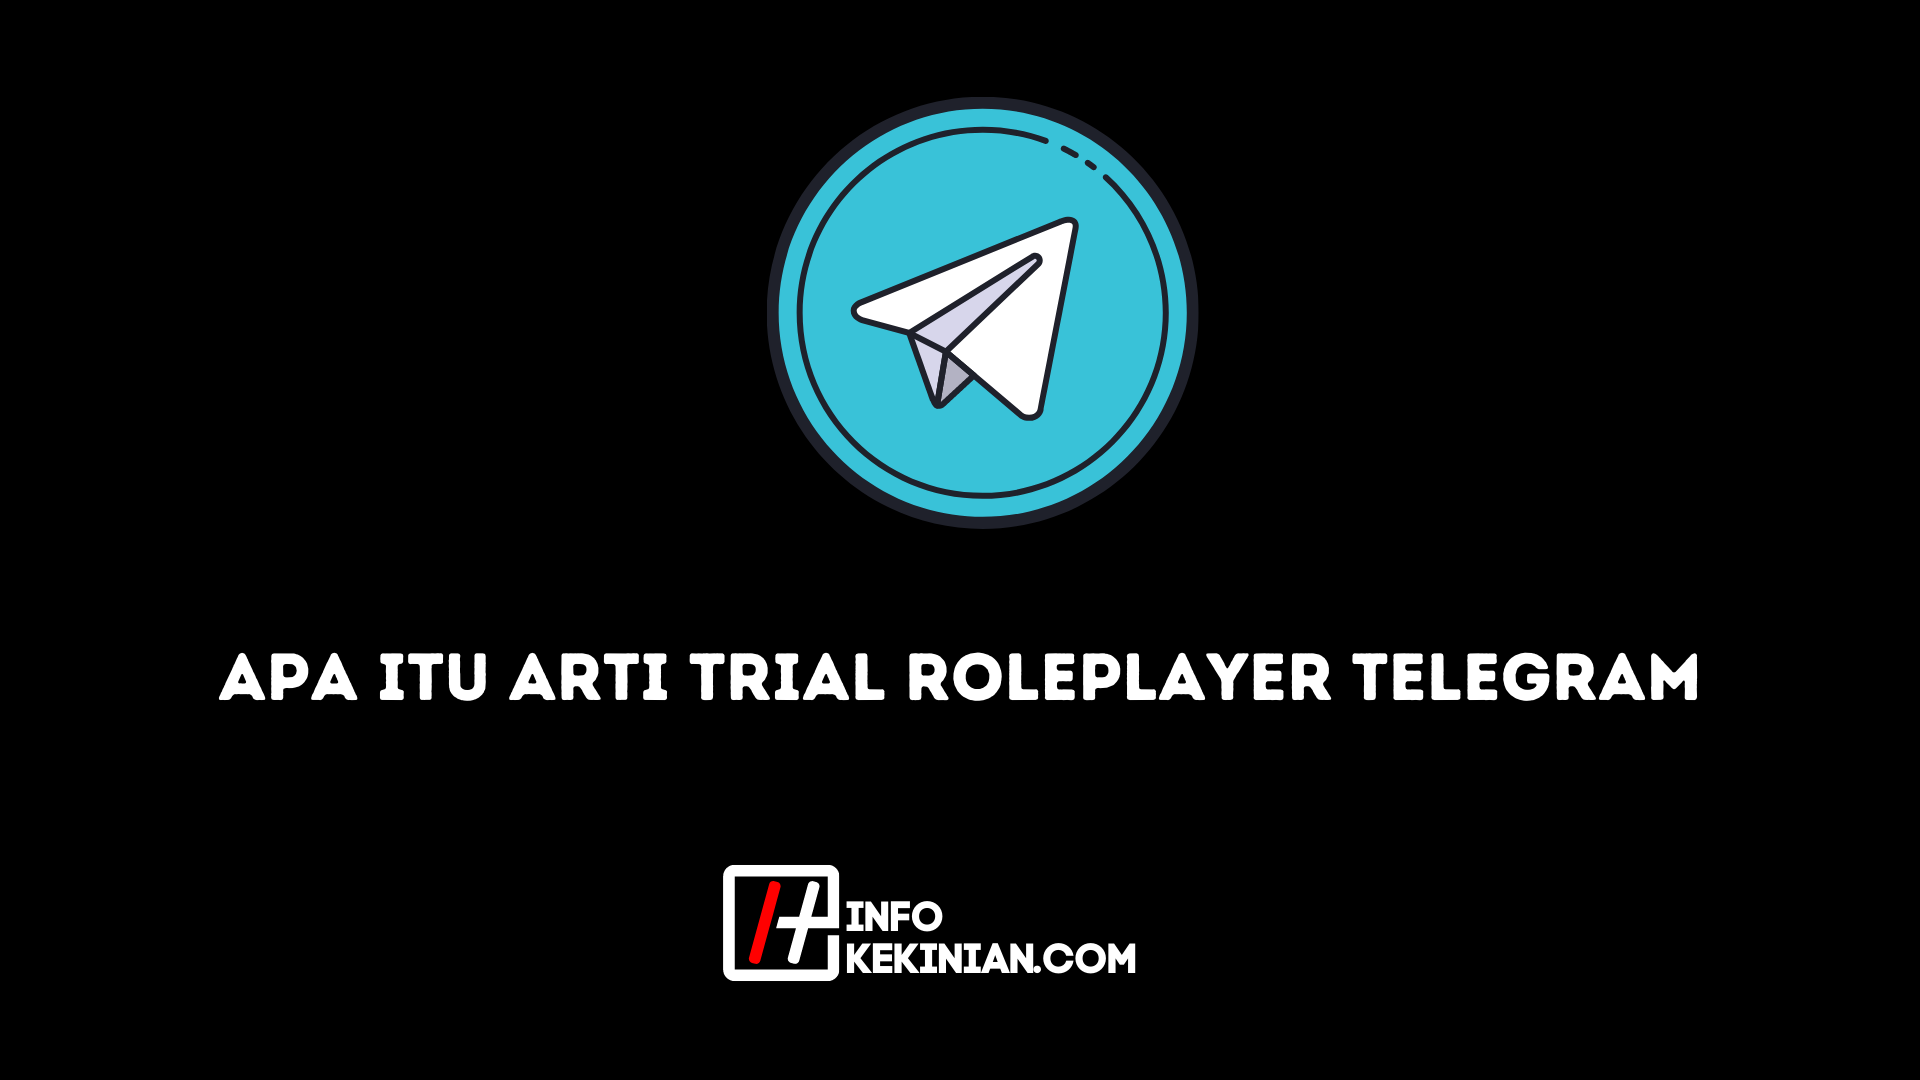 Apa itu Arti Trial RolePlayer Telegram